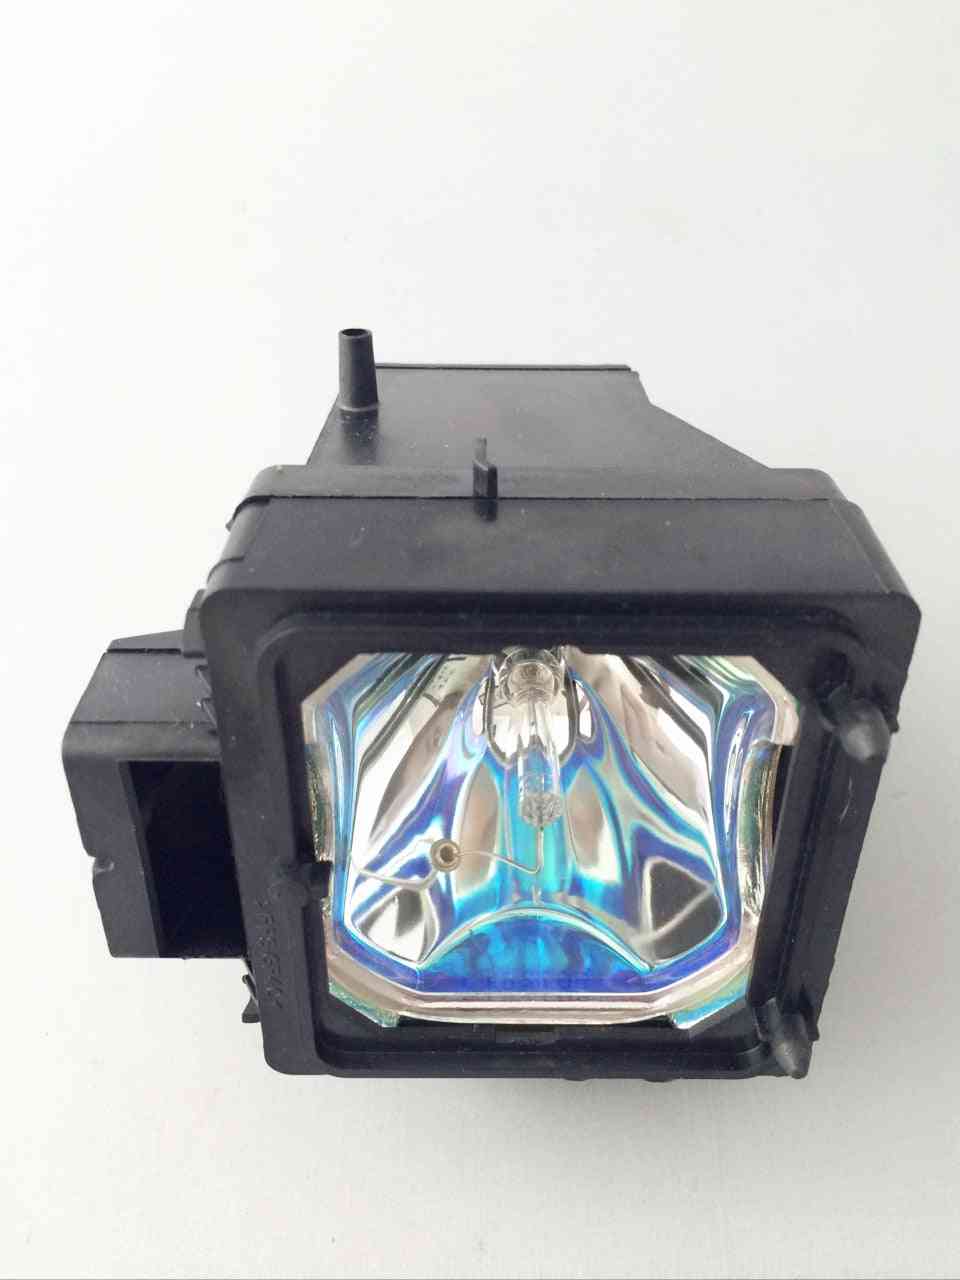 Lámpara de proyección de tv xl-5200 / xl 5200 para kds-50a2000 / kds-55a2000 / kds-60a2000 / kds-50a3000 / kds-55a3000 -